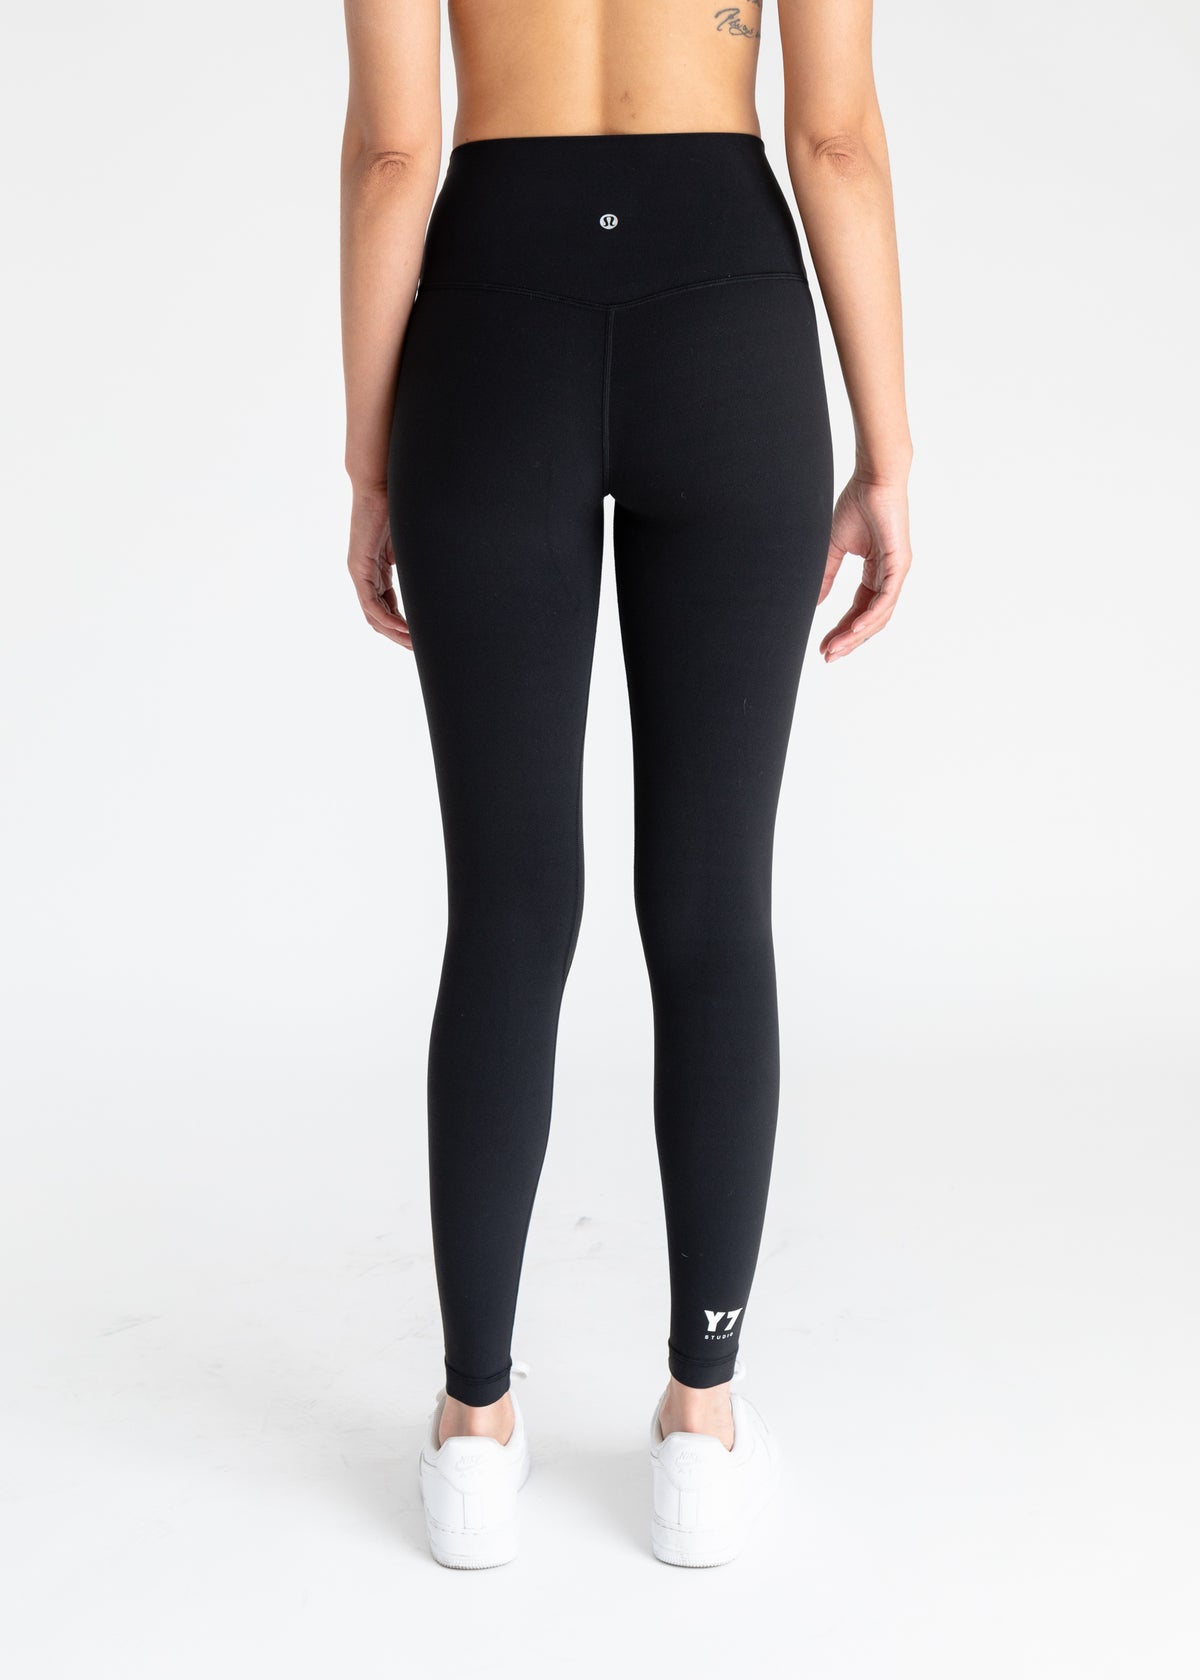 Lululemon Black & Gray Yoga Pants Full Length Leggings Size 4 - $21 (77%  Off Retail) - From Allison